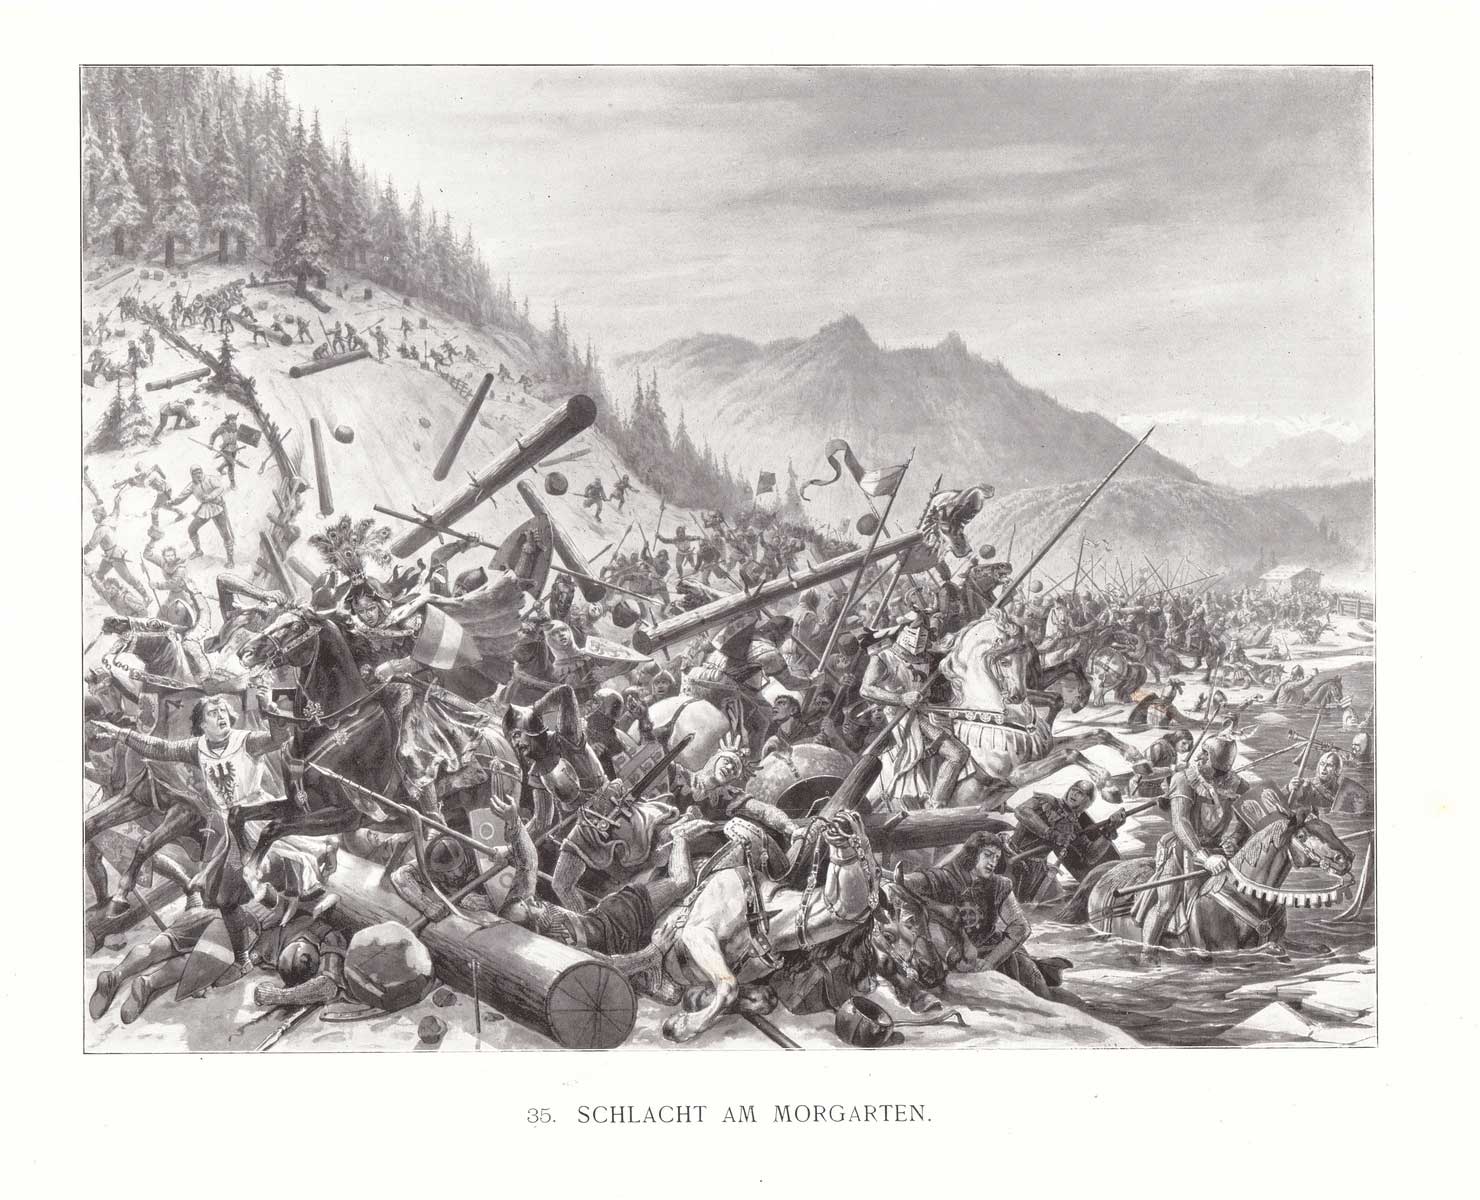 Représentation de la bataille de Morgarten par Karl Jauslin (1842-1904), vraisemblablement exagérée.